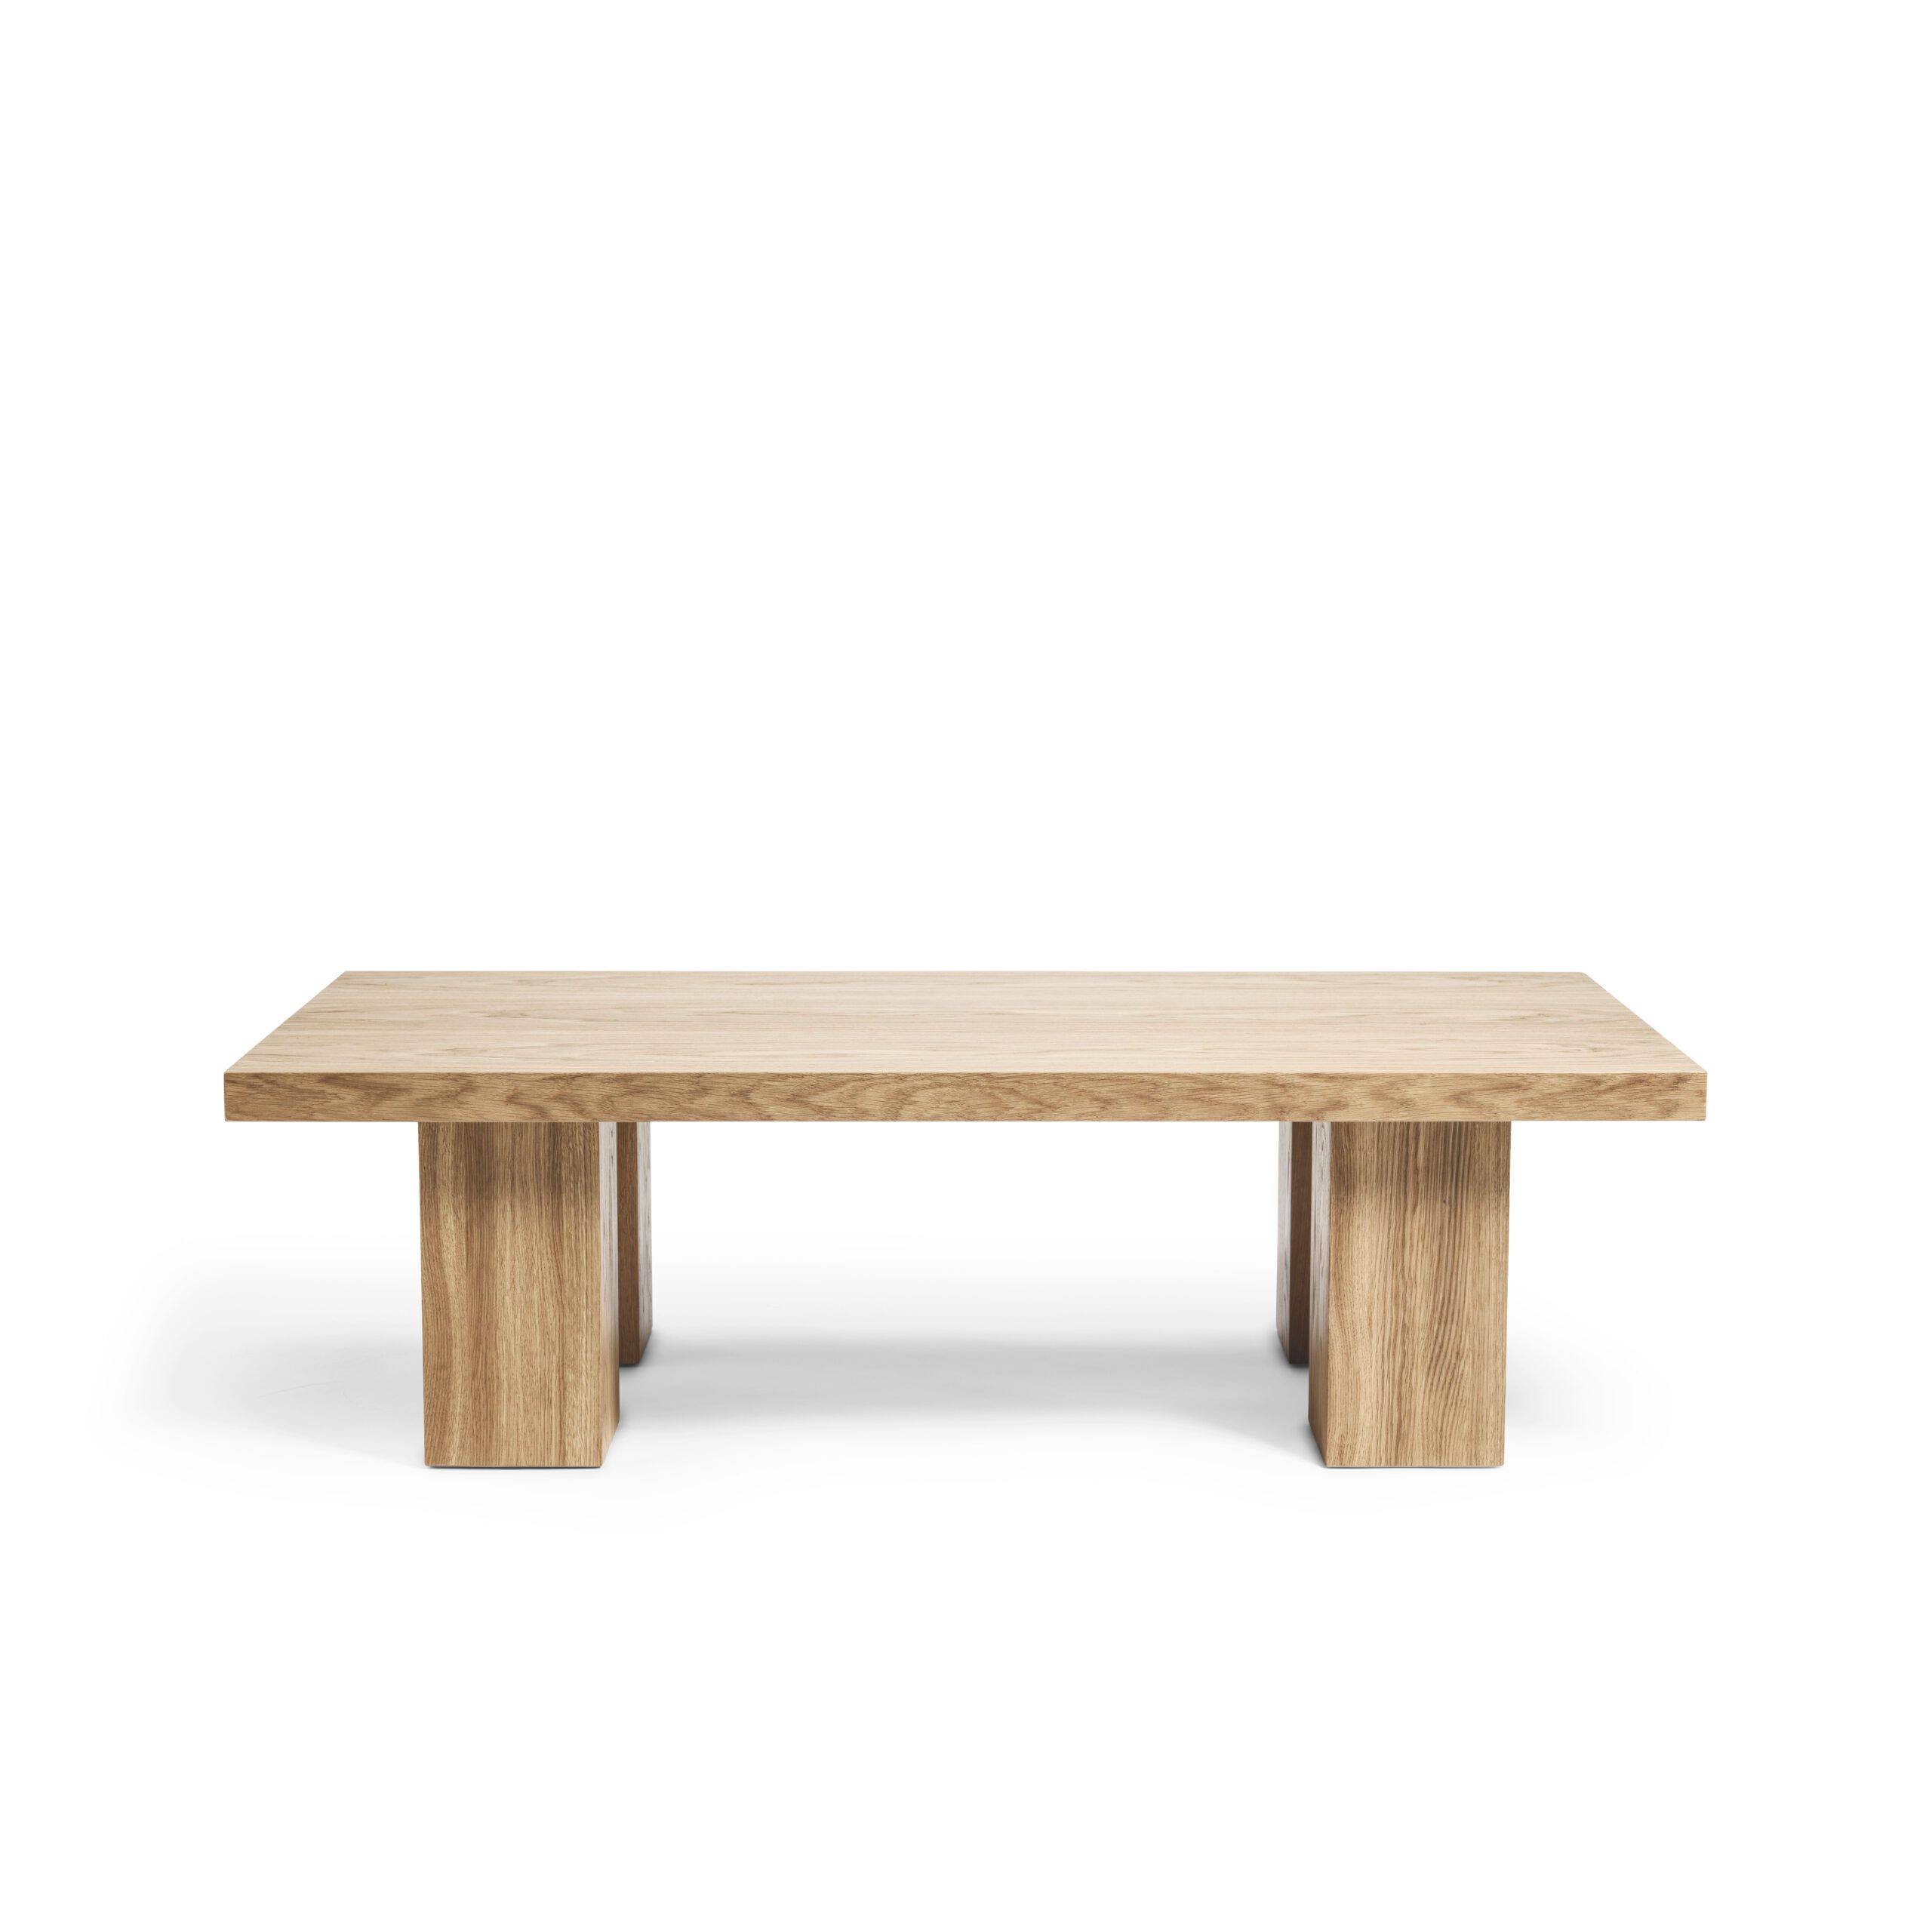 Kennedy oak coffee table Melimeli oak table scandinavian design